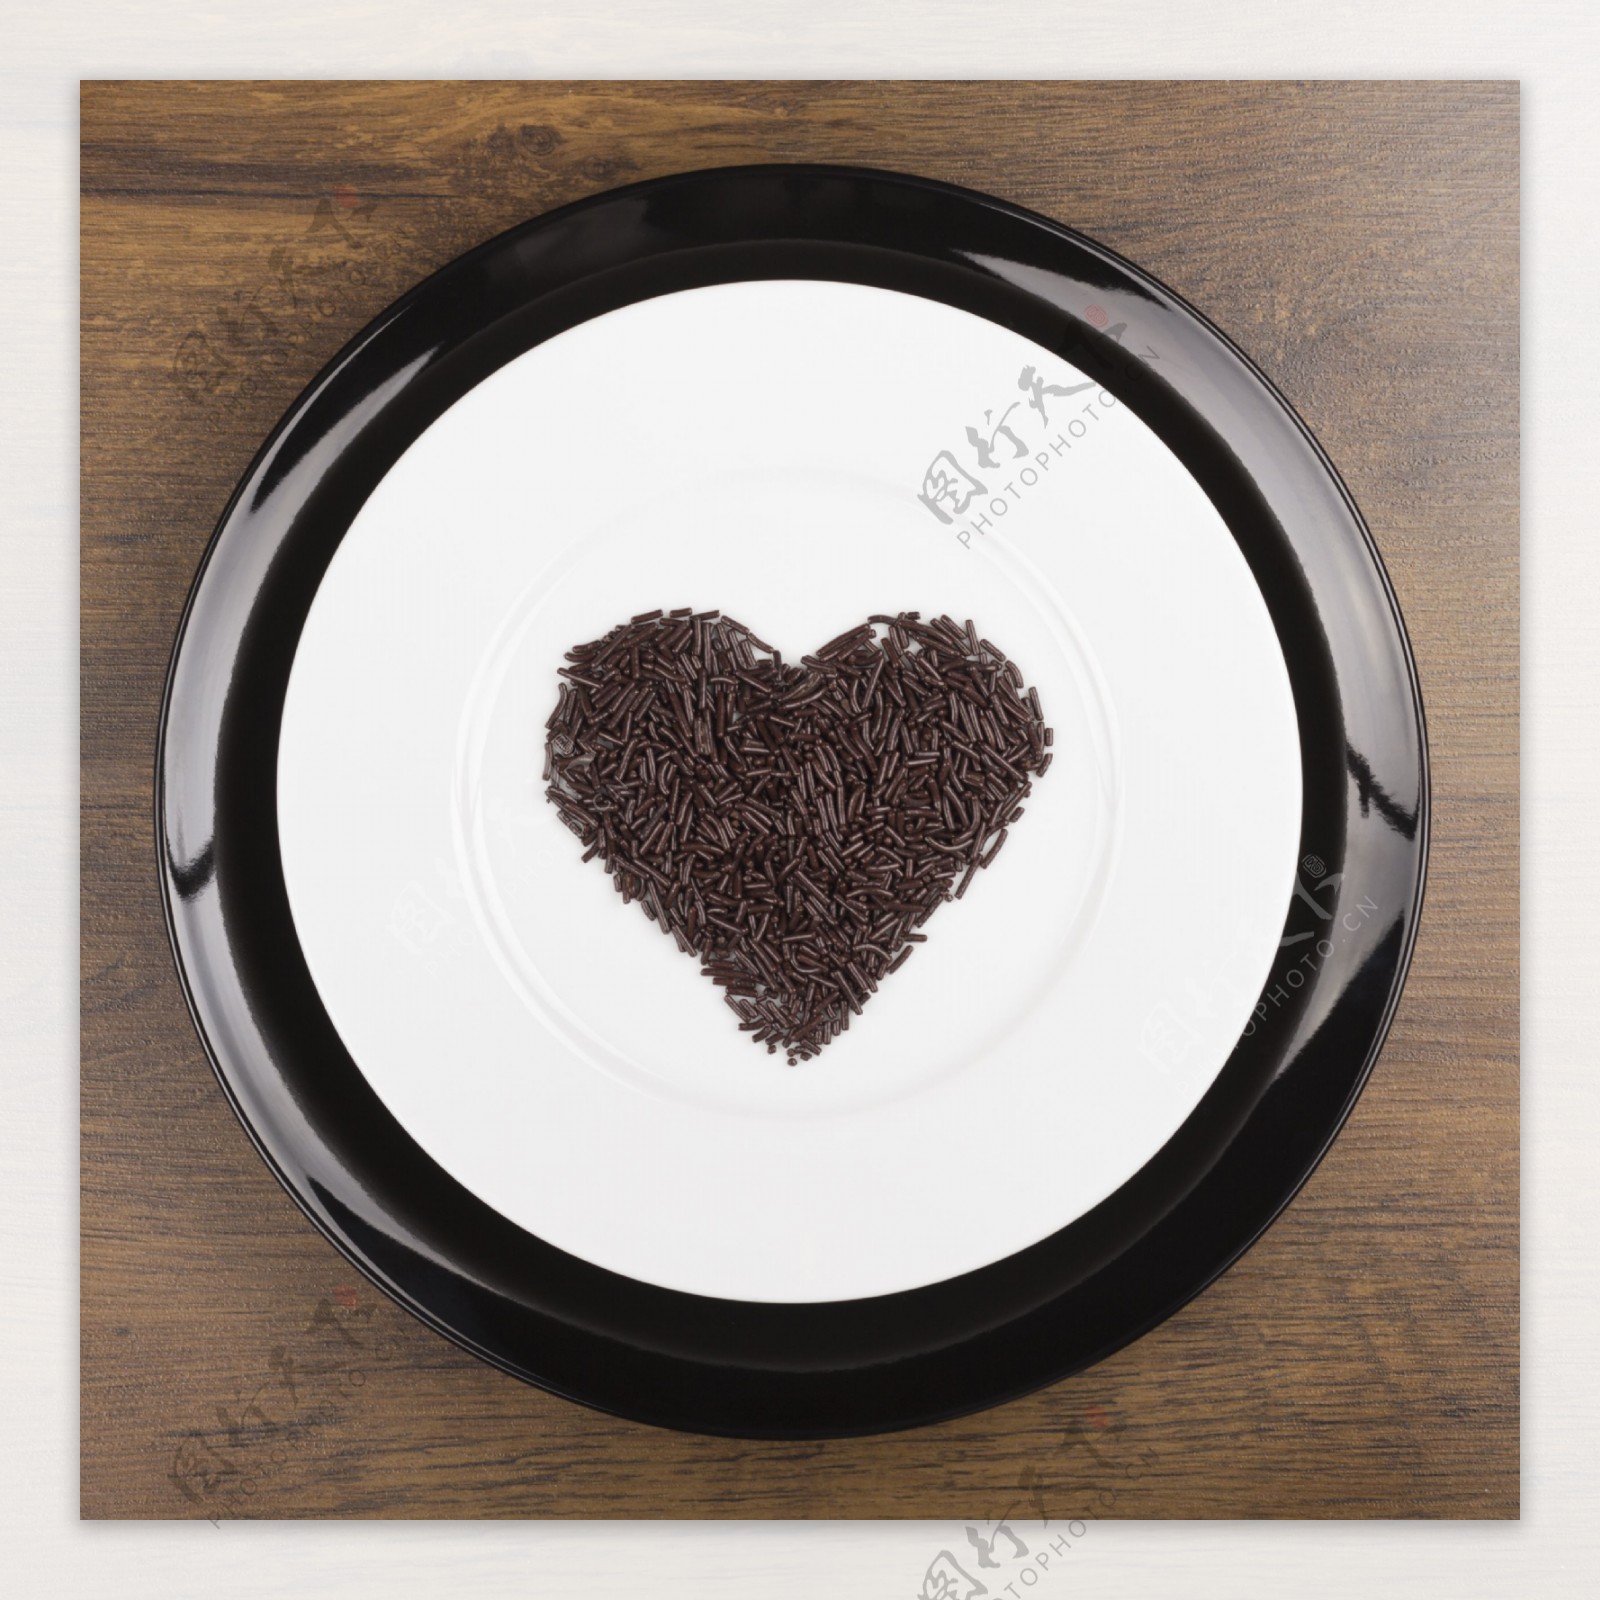 盘子里的心形巧克力图片素材